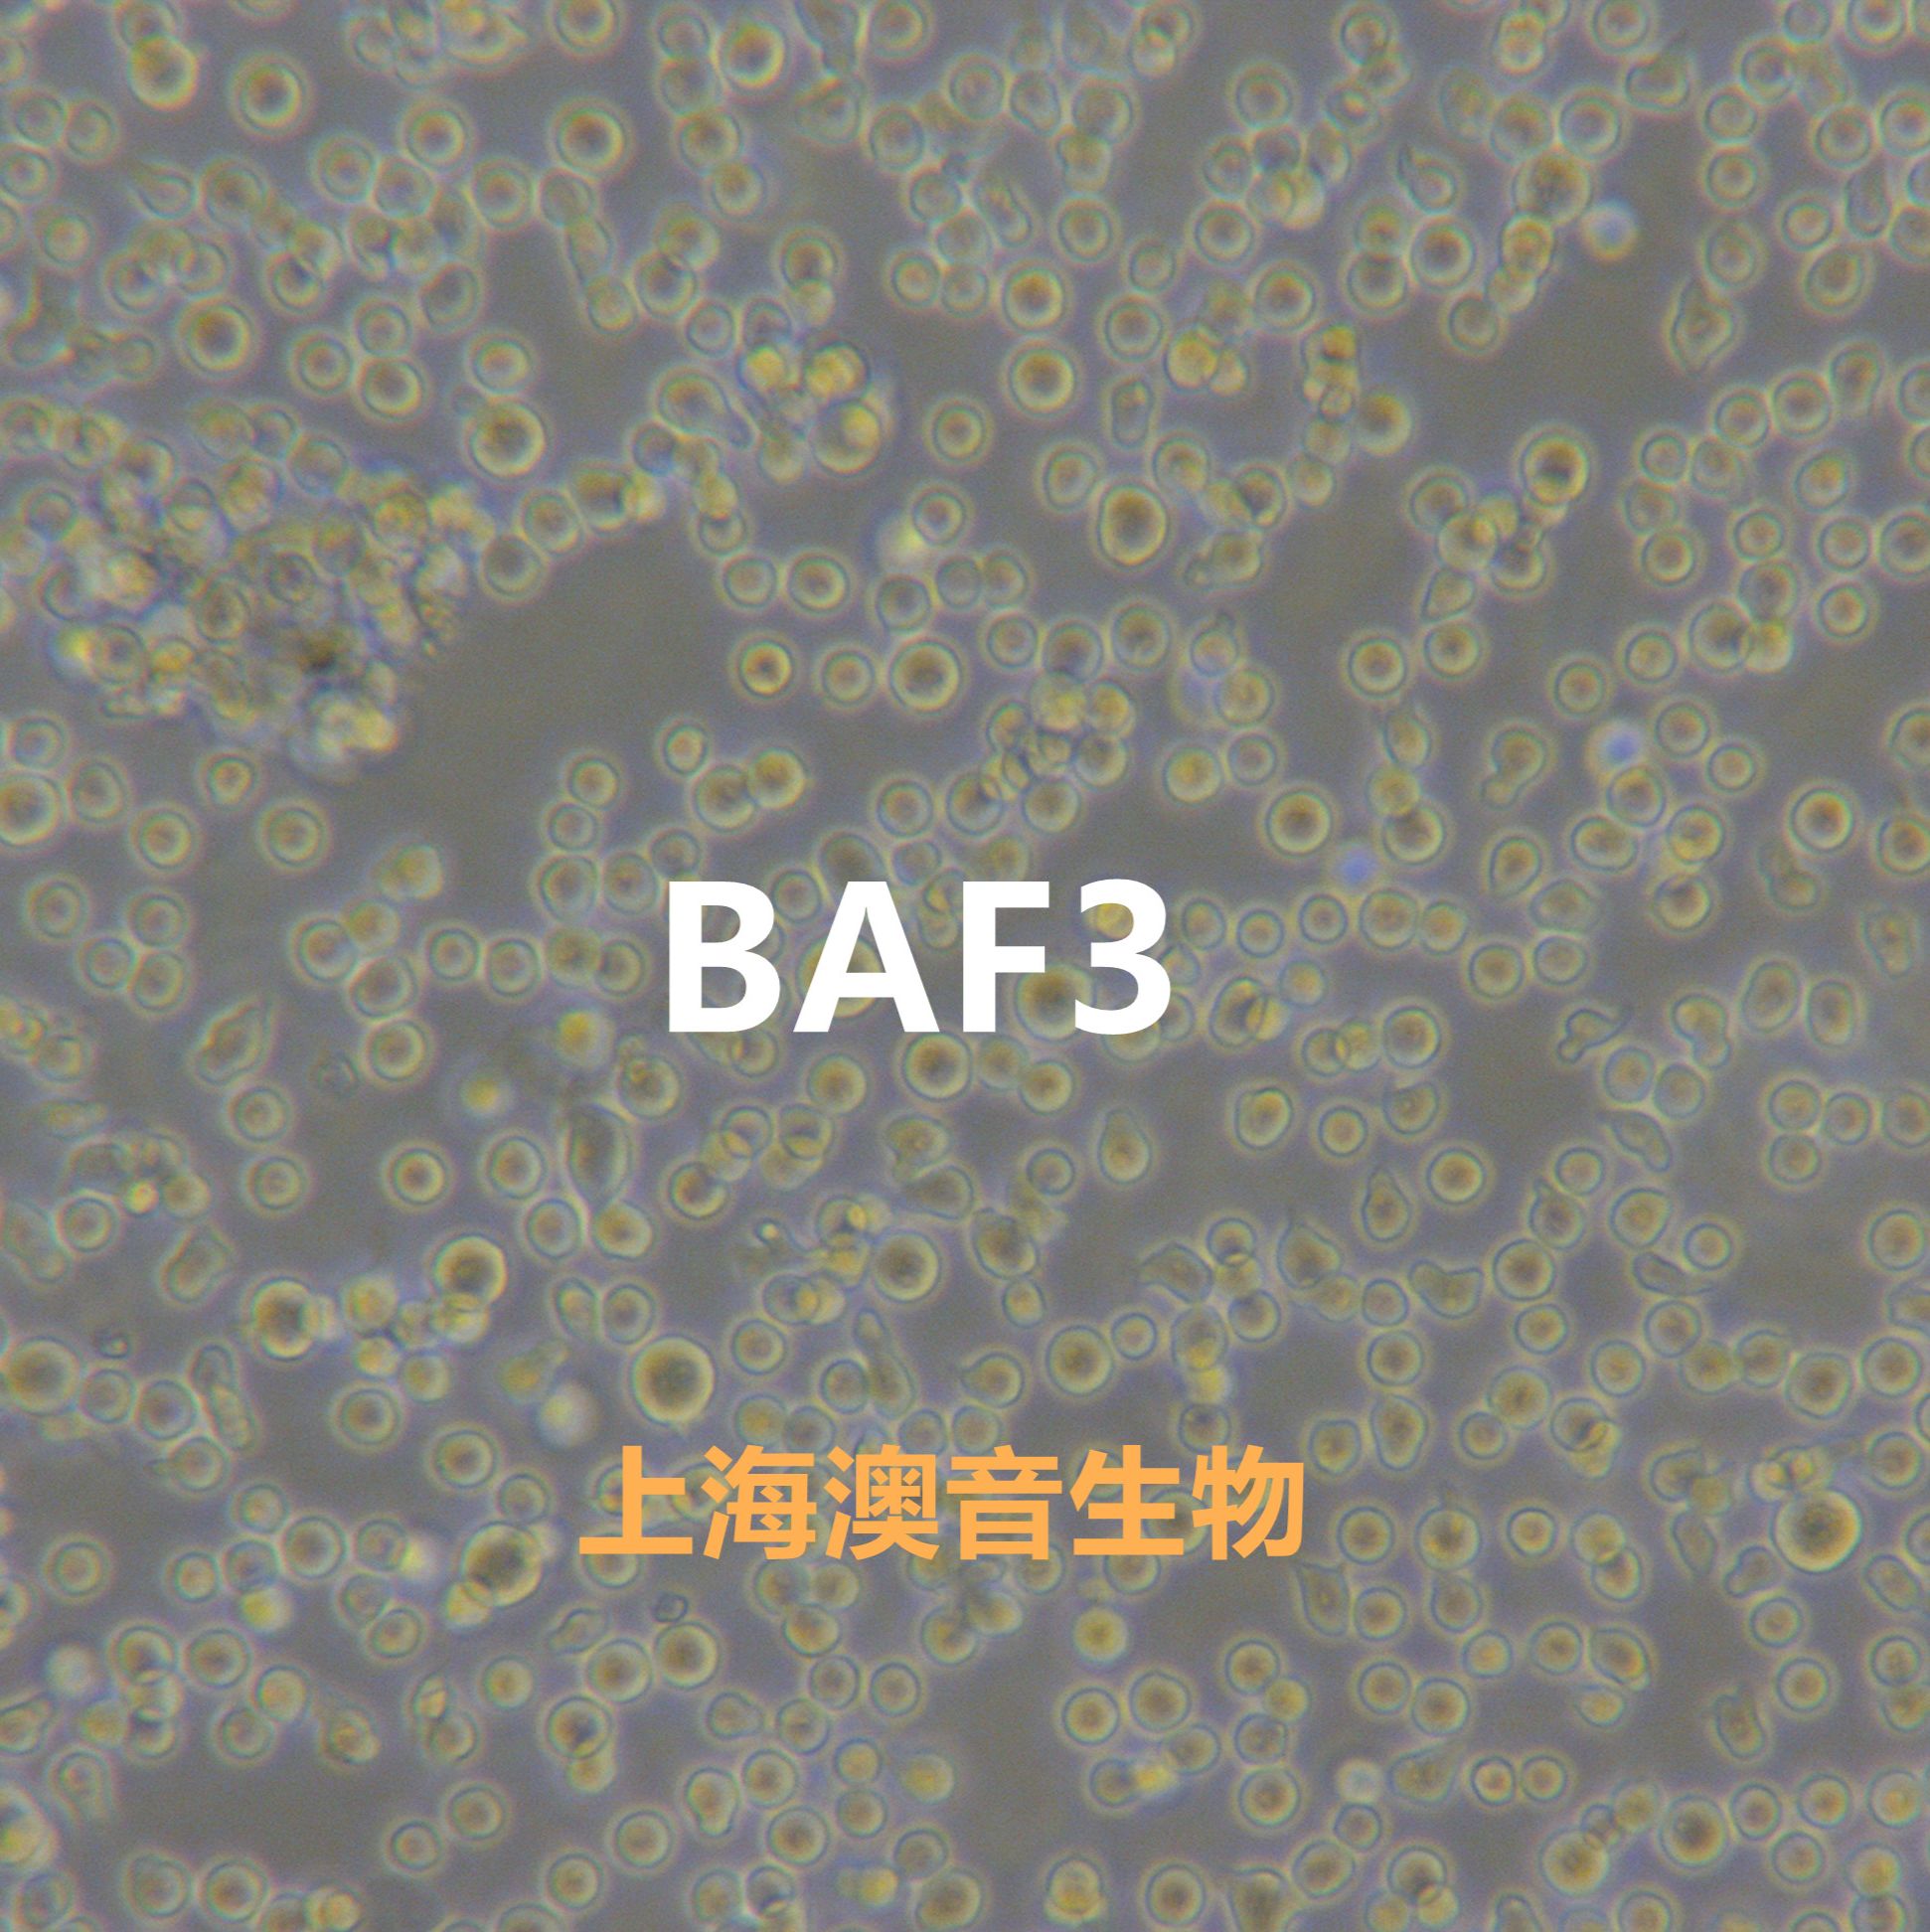 BAF3[BA/F3; BaF3; BAF3; Baf3]小鼠原B细胞株